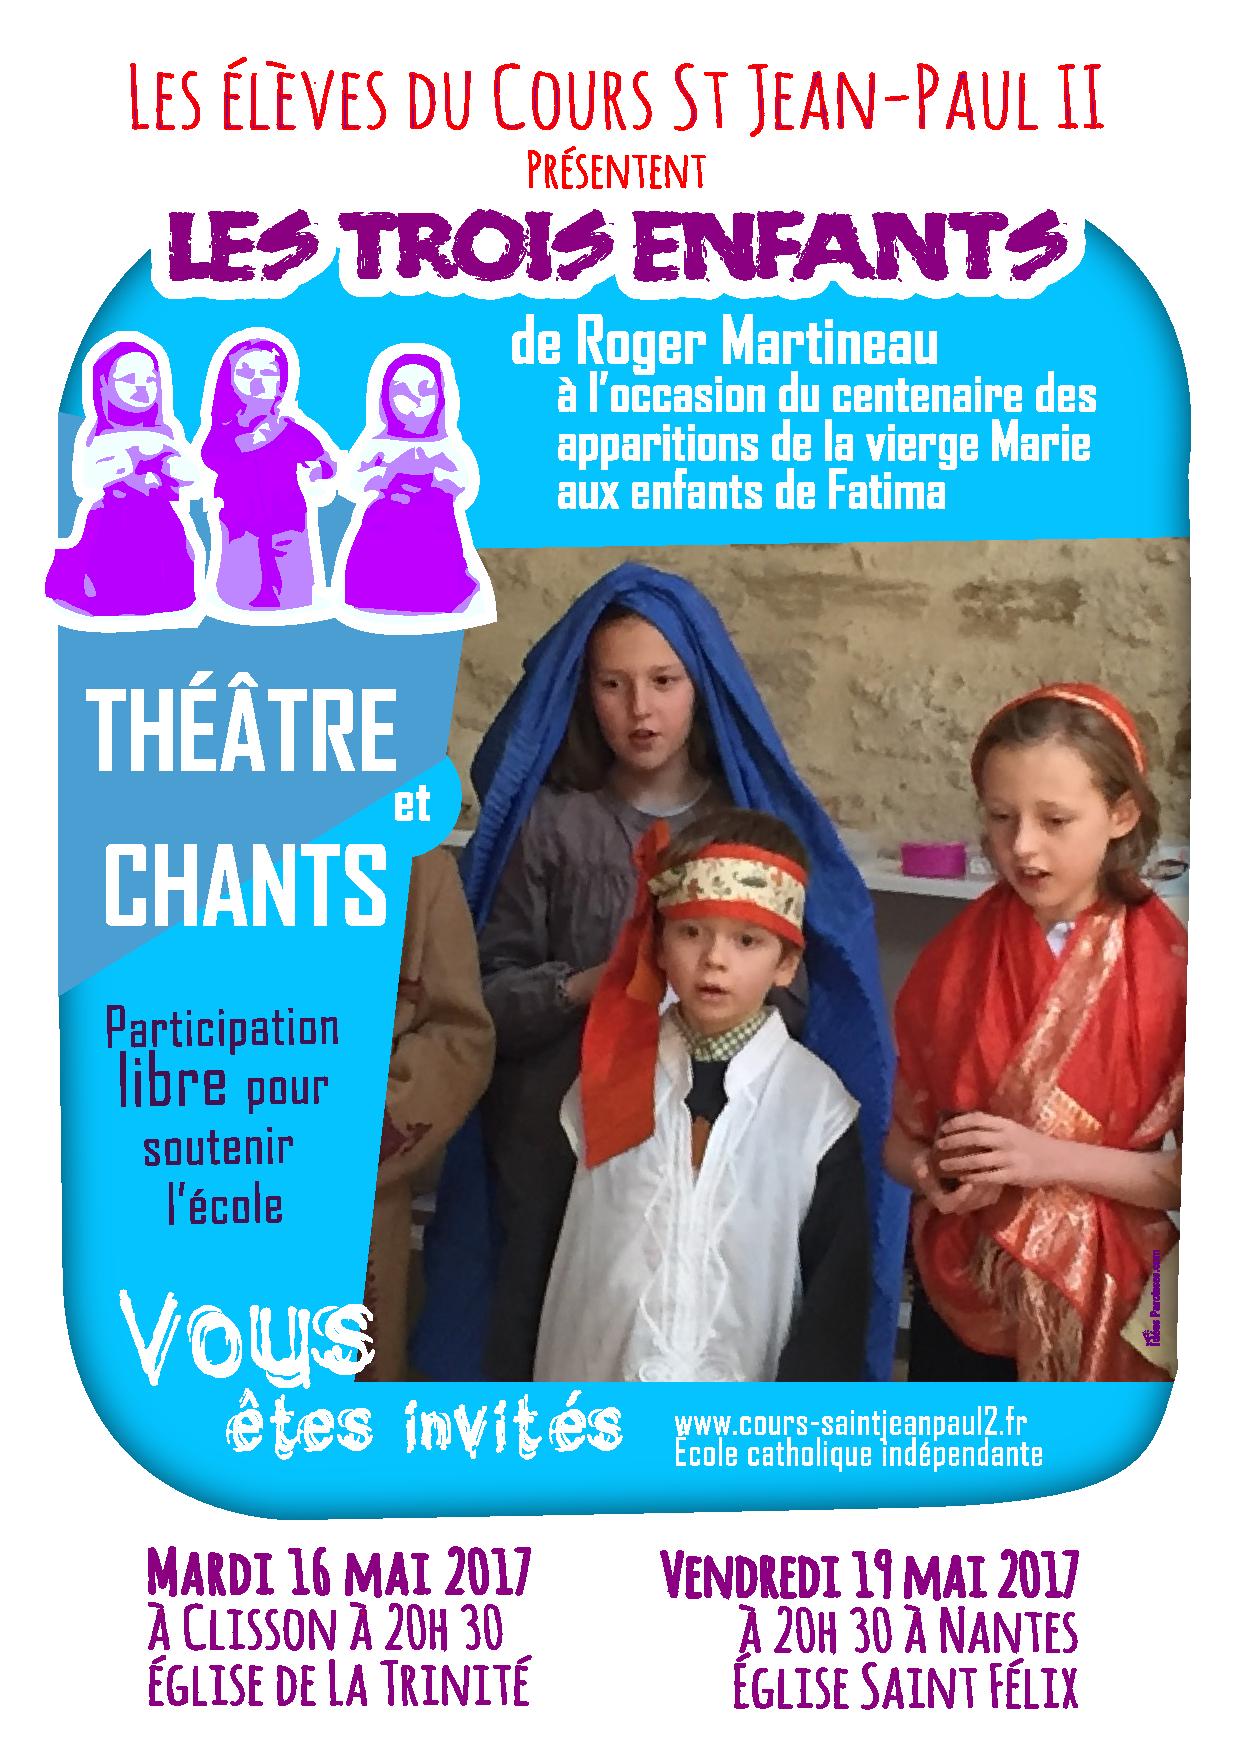 A Nantes, les élèves du cours St Jean-Paul II présentent “Les trois enfants”, spectacle de Roger Martineau